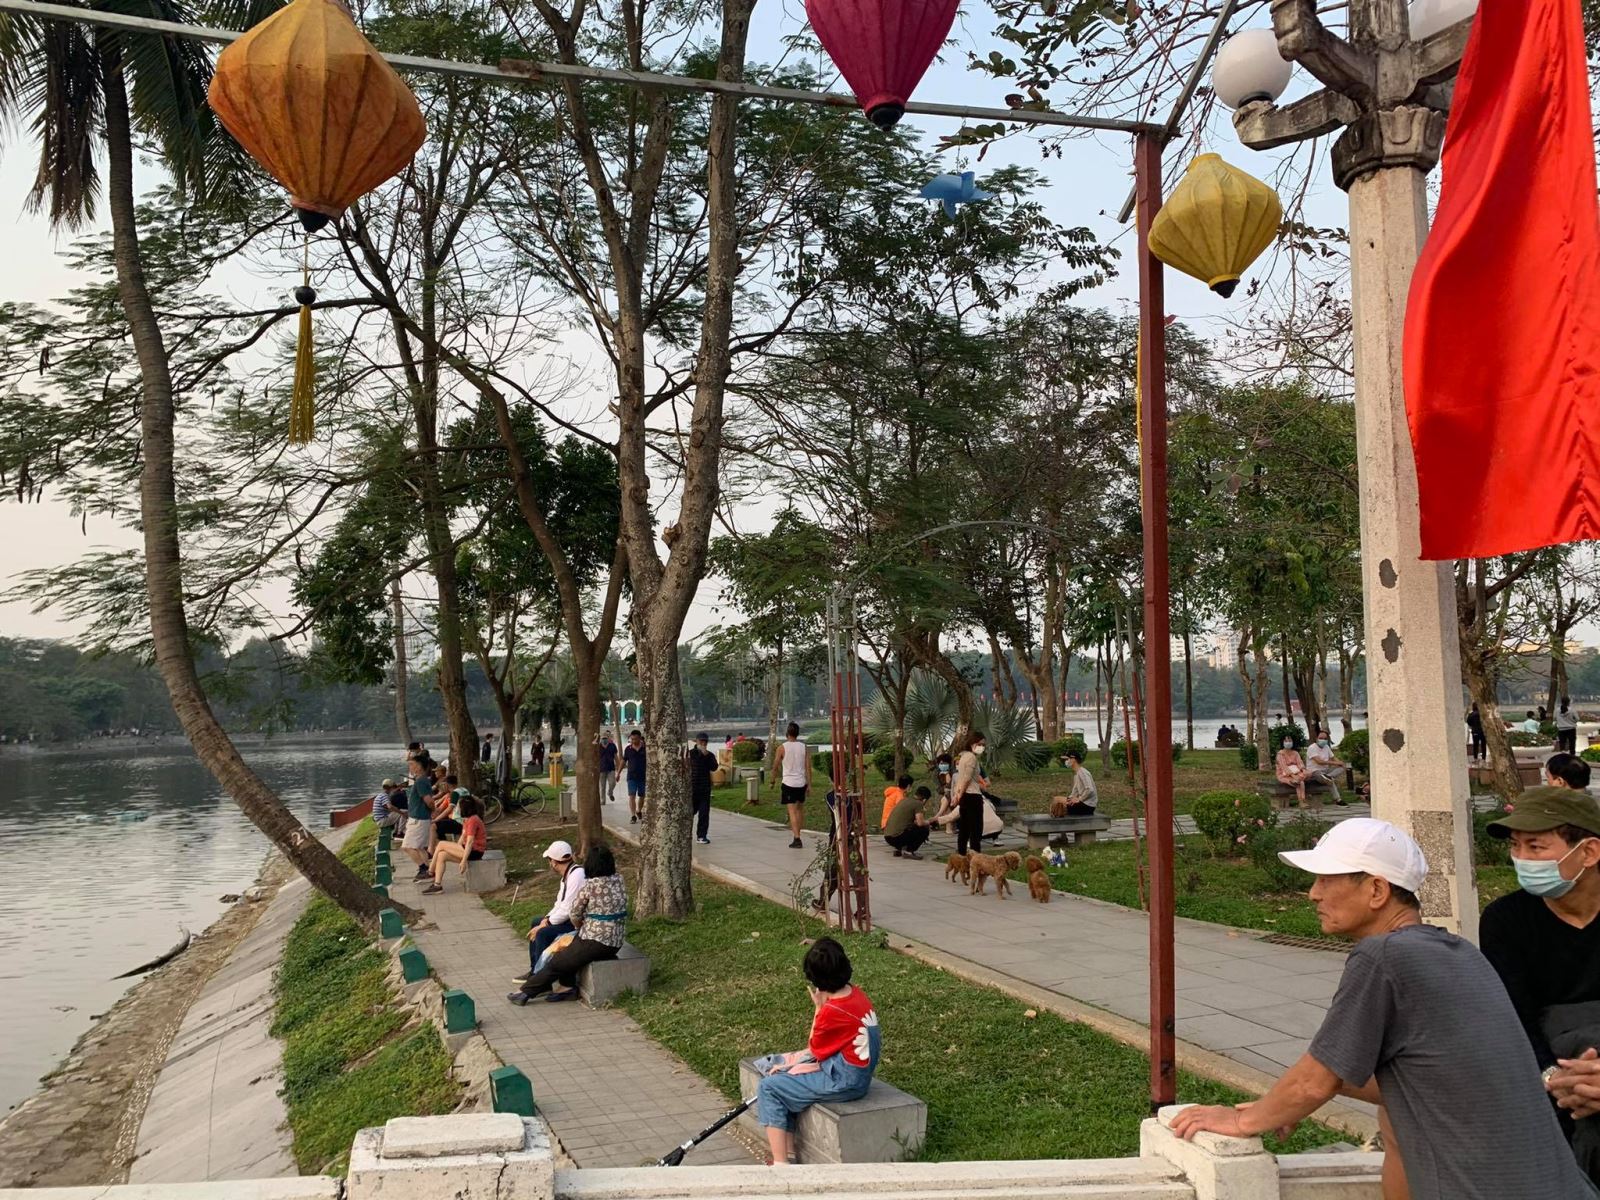 Hà Nội: Người dân vui chơi tại công viên còn lơ là trong phòng dịch COVID-19 - Ảnh 6.